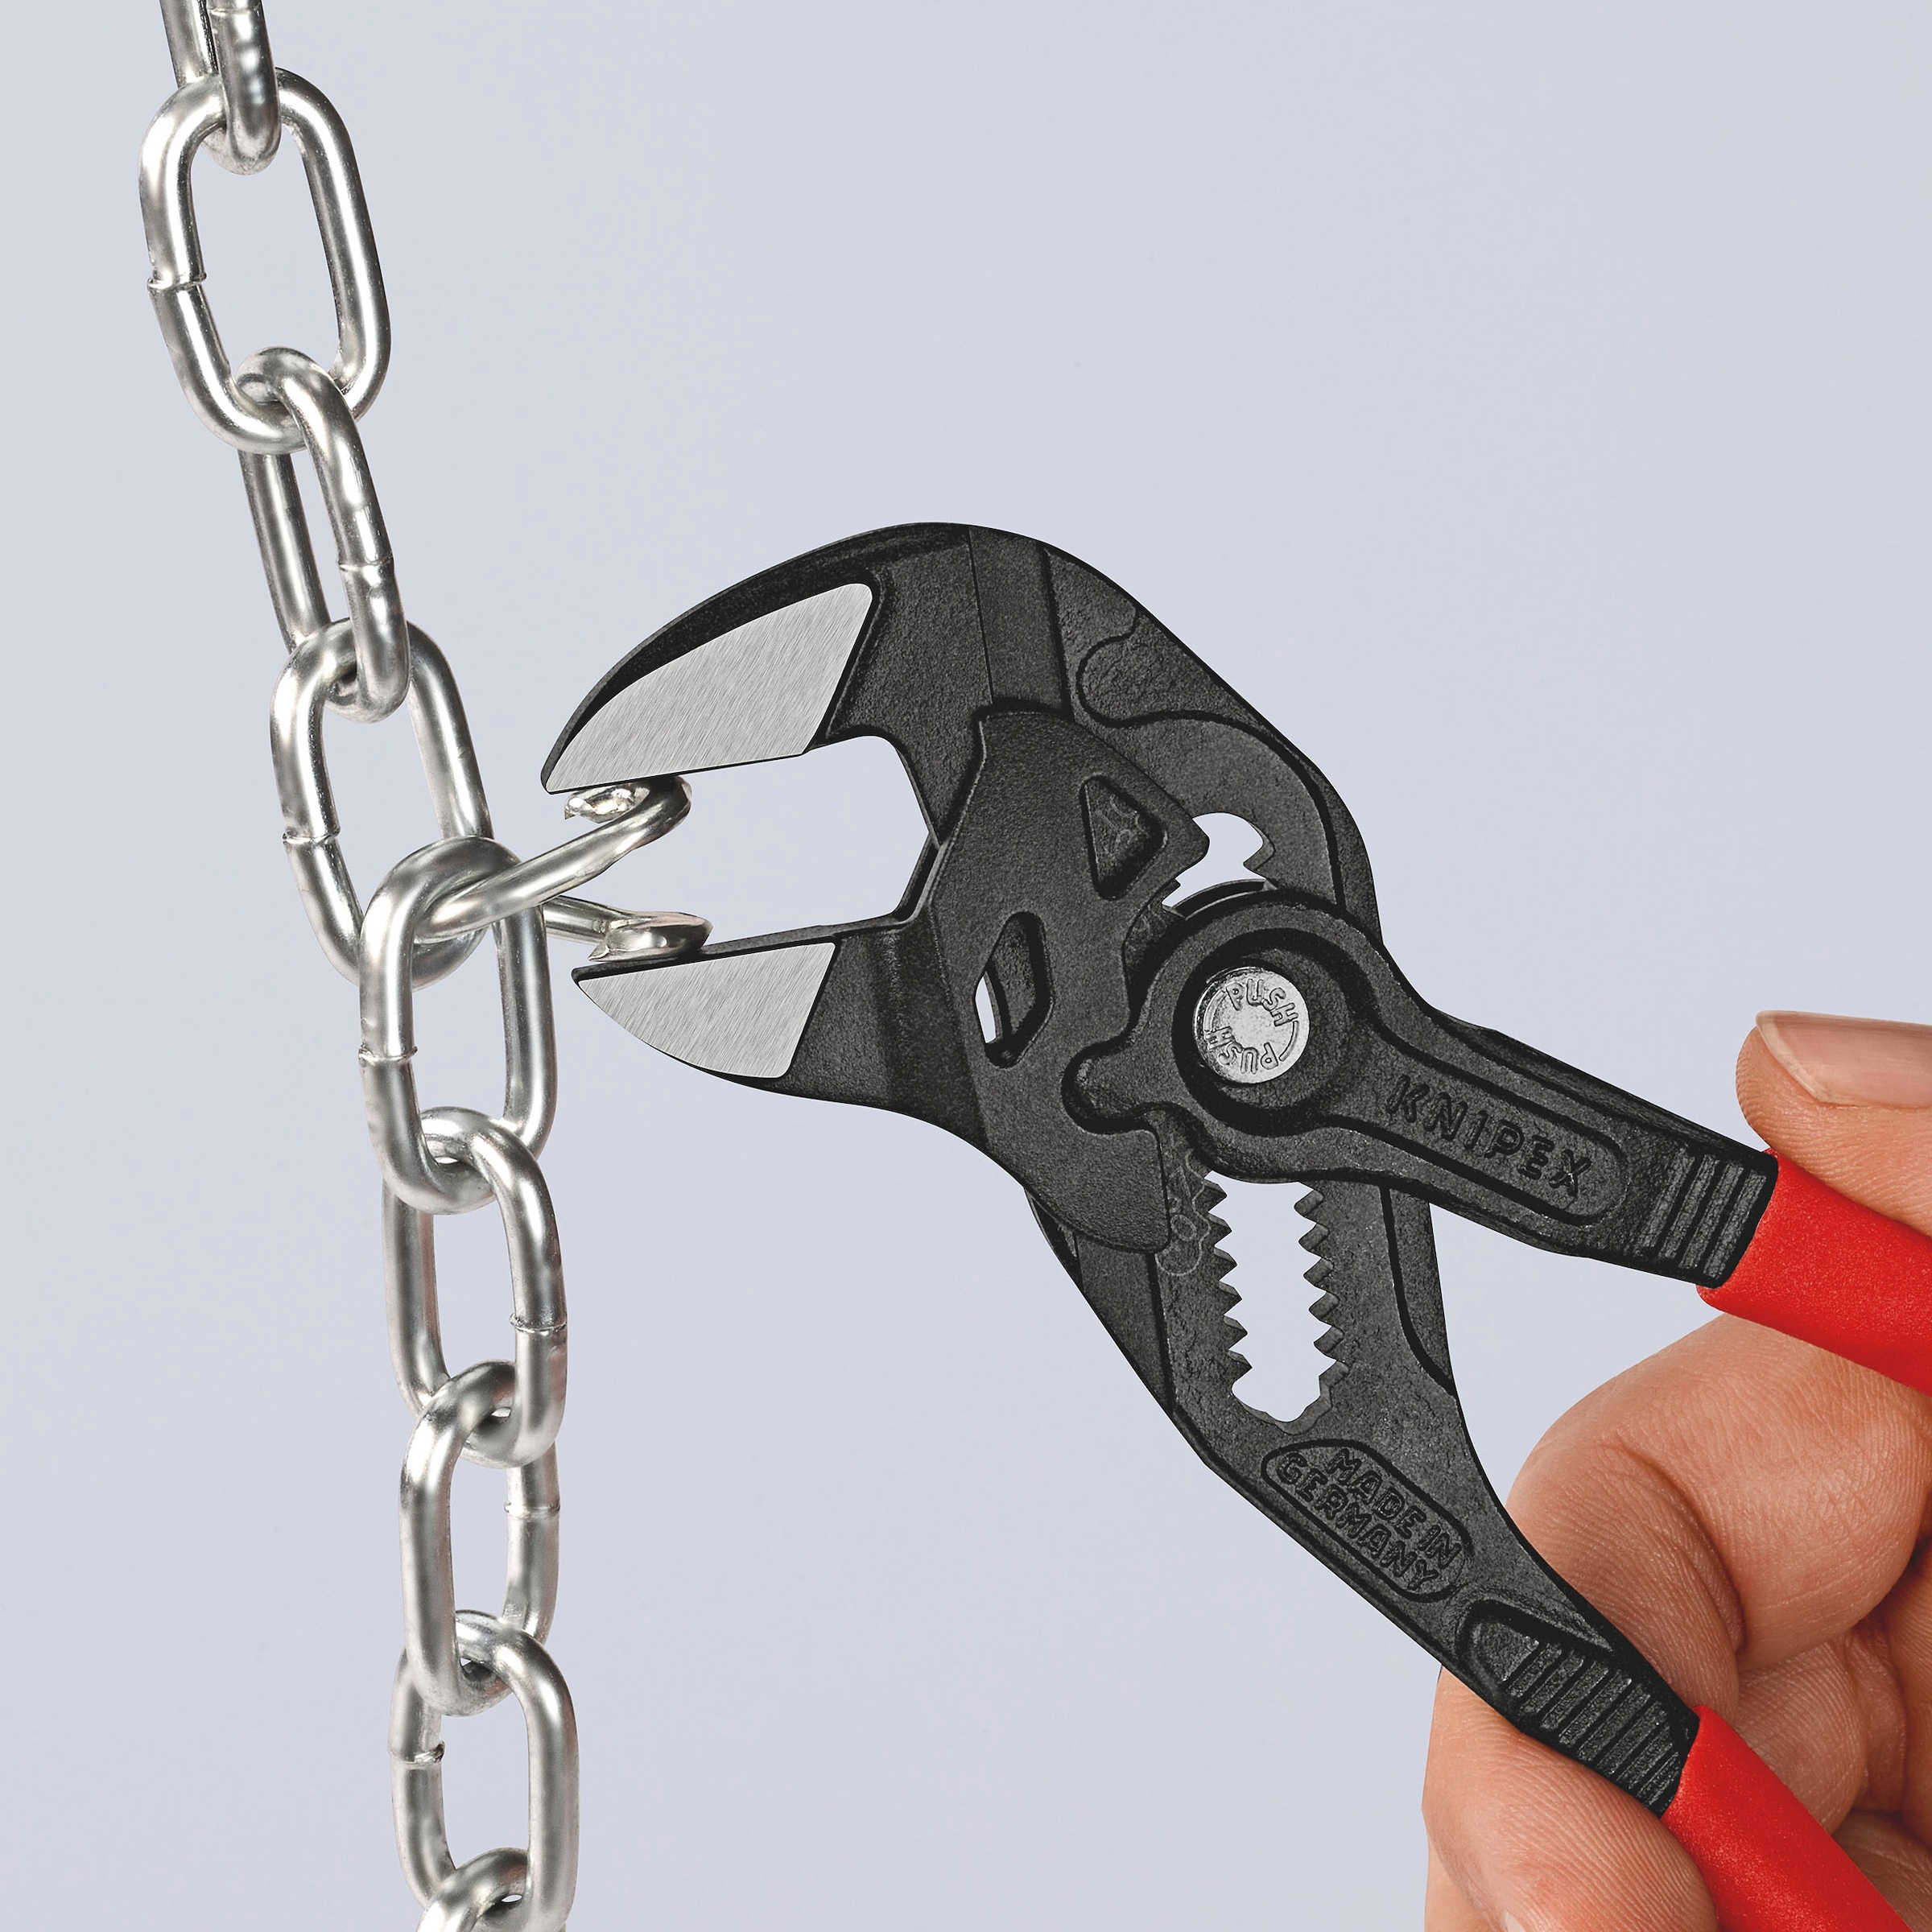 Knipex Zangenschlüssel »86 01 180 Zange und Schraubenschlüssel in einem  Werkzeug«, (1 tlg.), grau atramentiert, mit Kunststoff überzogen 180 mm  online kaufen bei OTTO